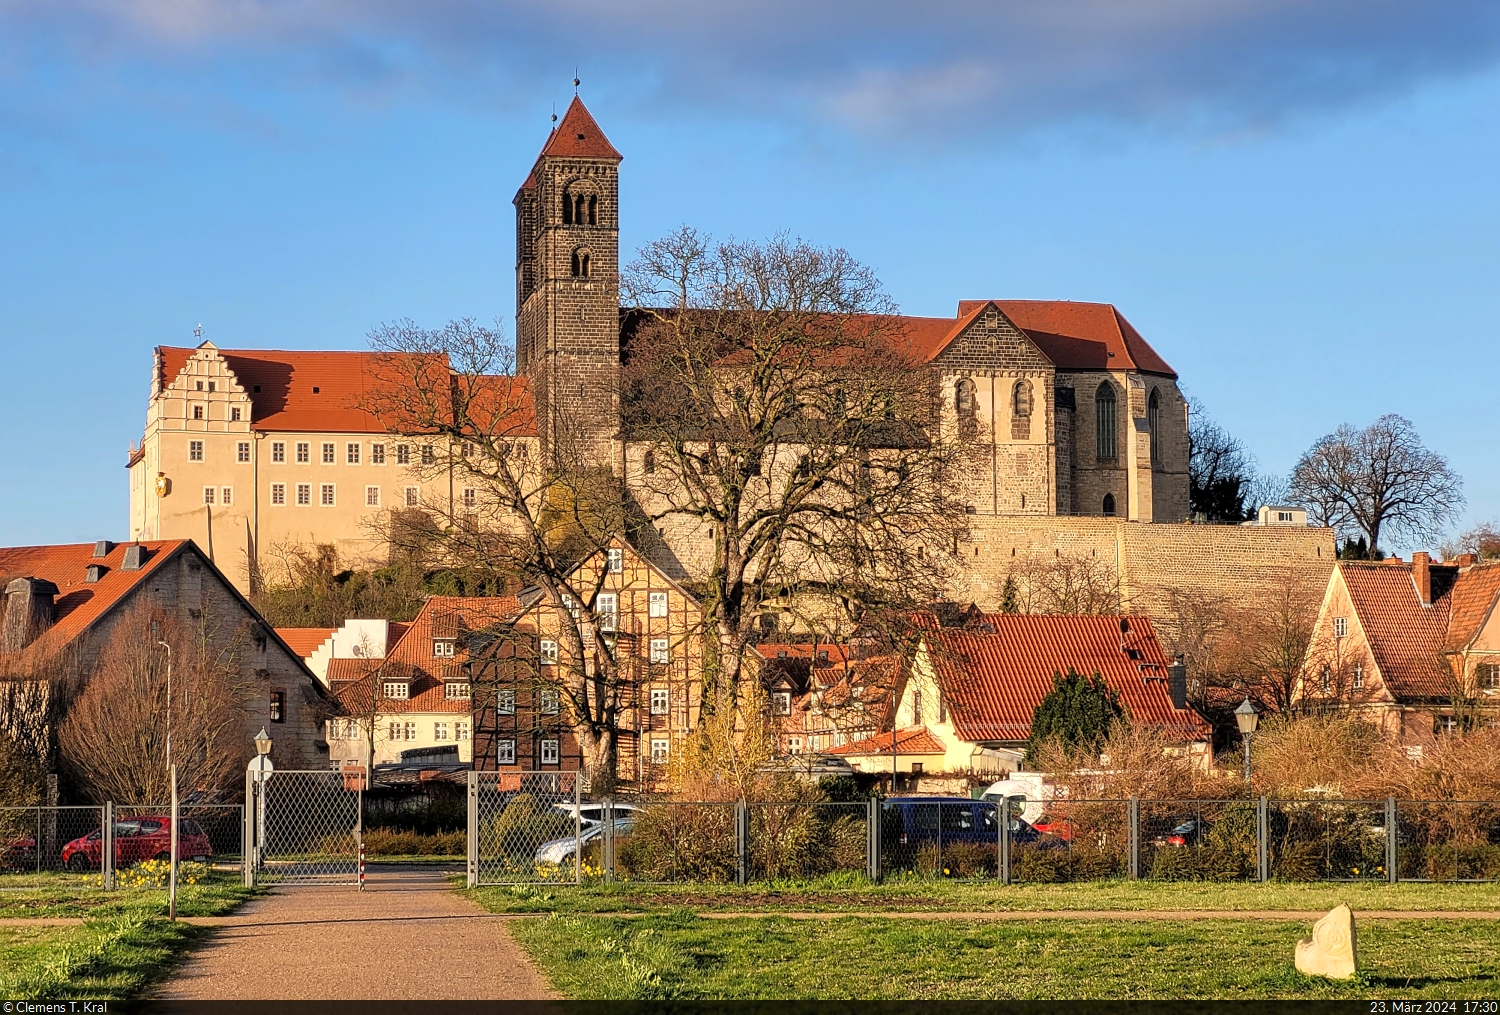 Gilt als eines der Wahrzeichen von Quedlinburg: die Stiftskirche St. Servatius, gesehen vom Abteigarten.

🕓 23.3.2024 | 17:30 Uhr